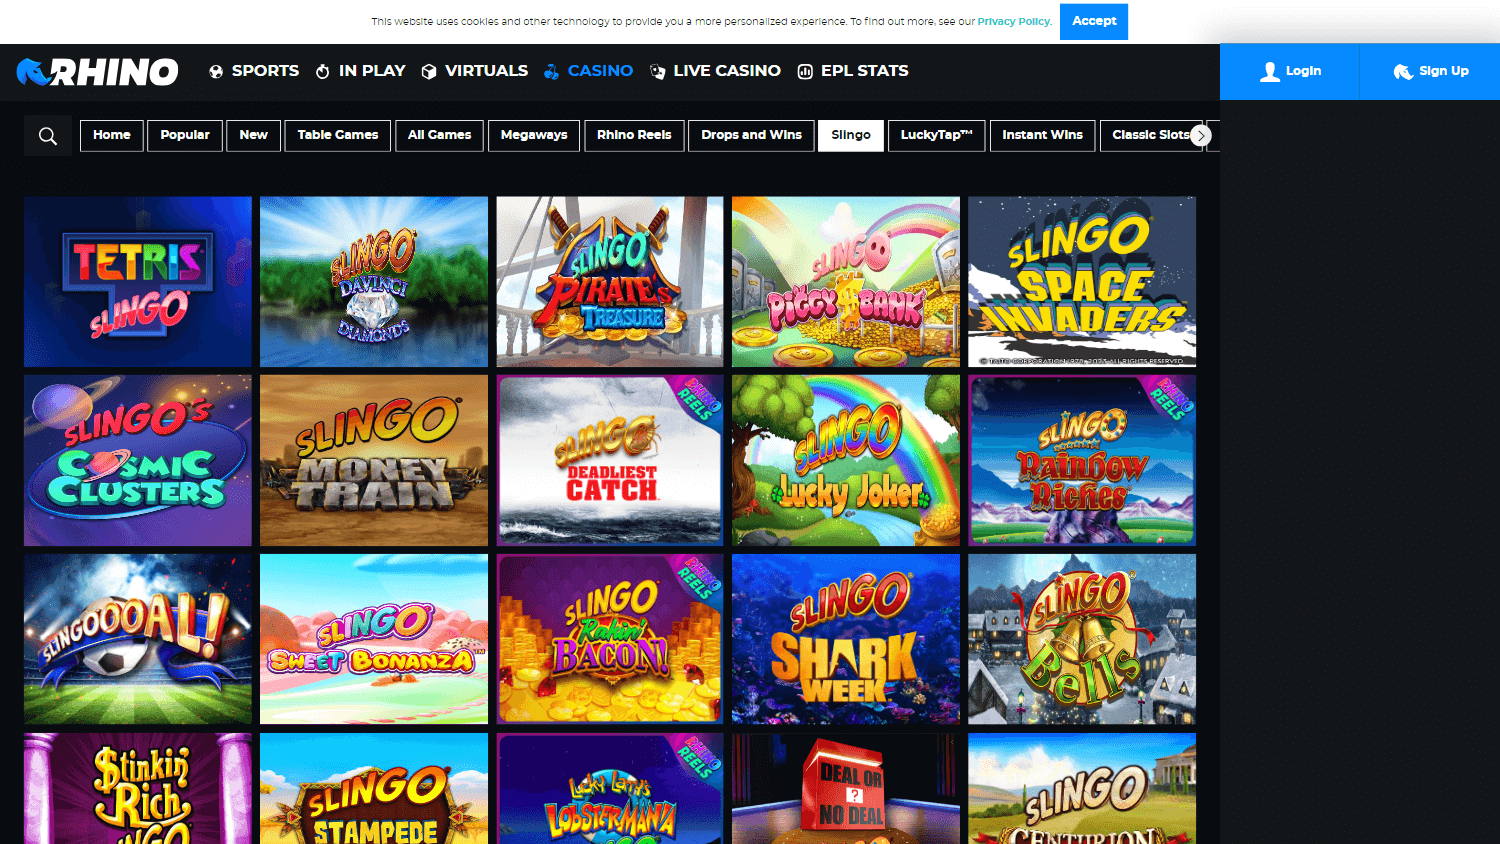 rhino_casino_homepage_desktop